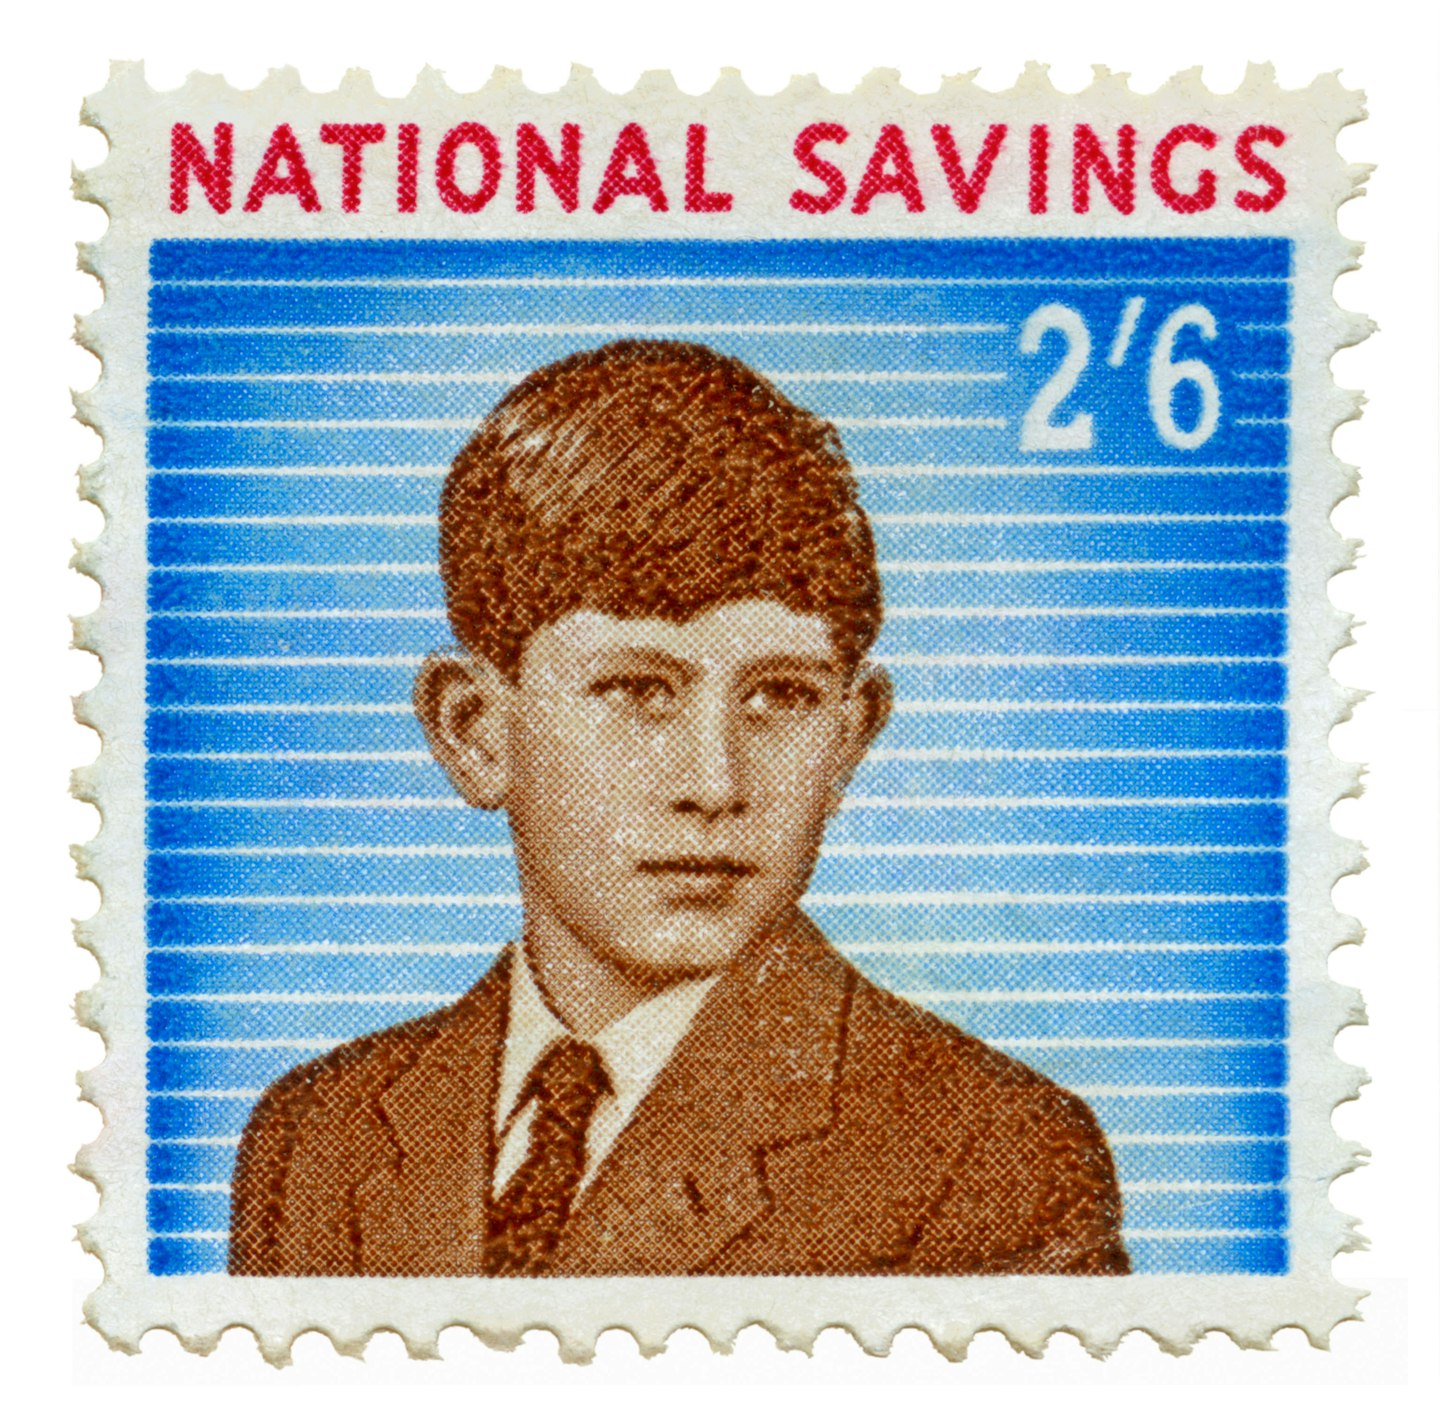 National Savings stamps